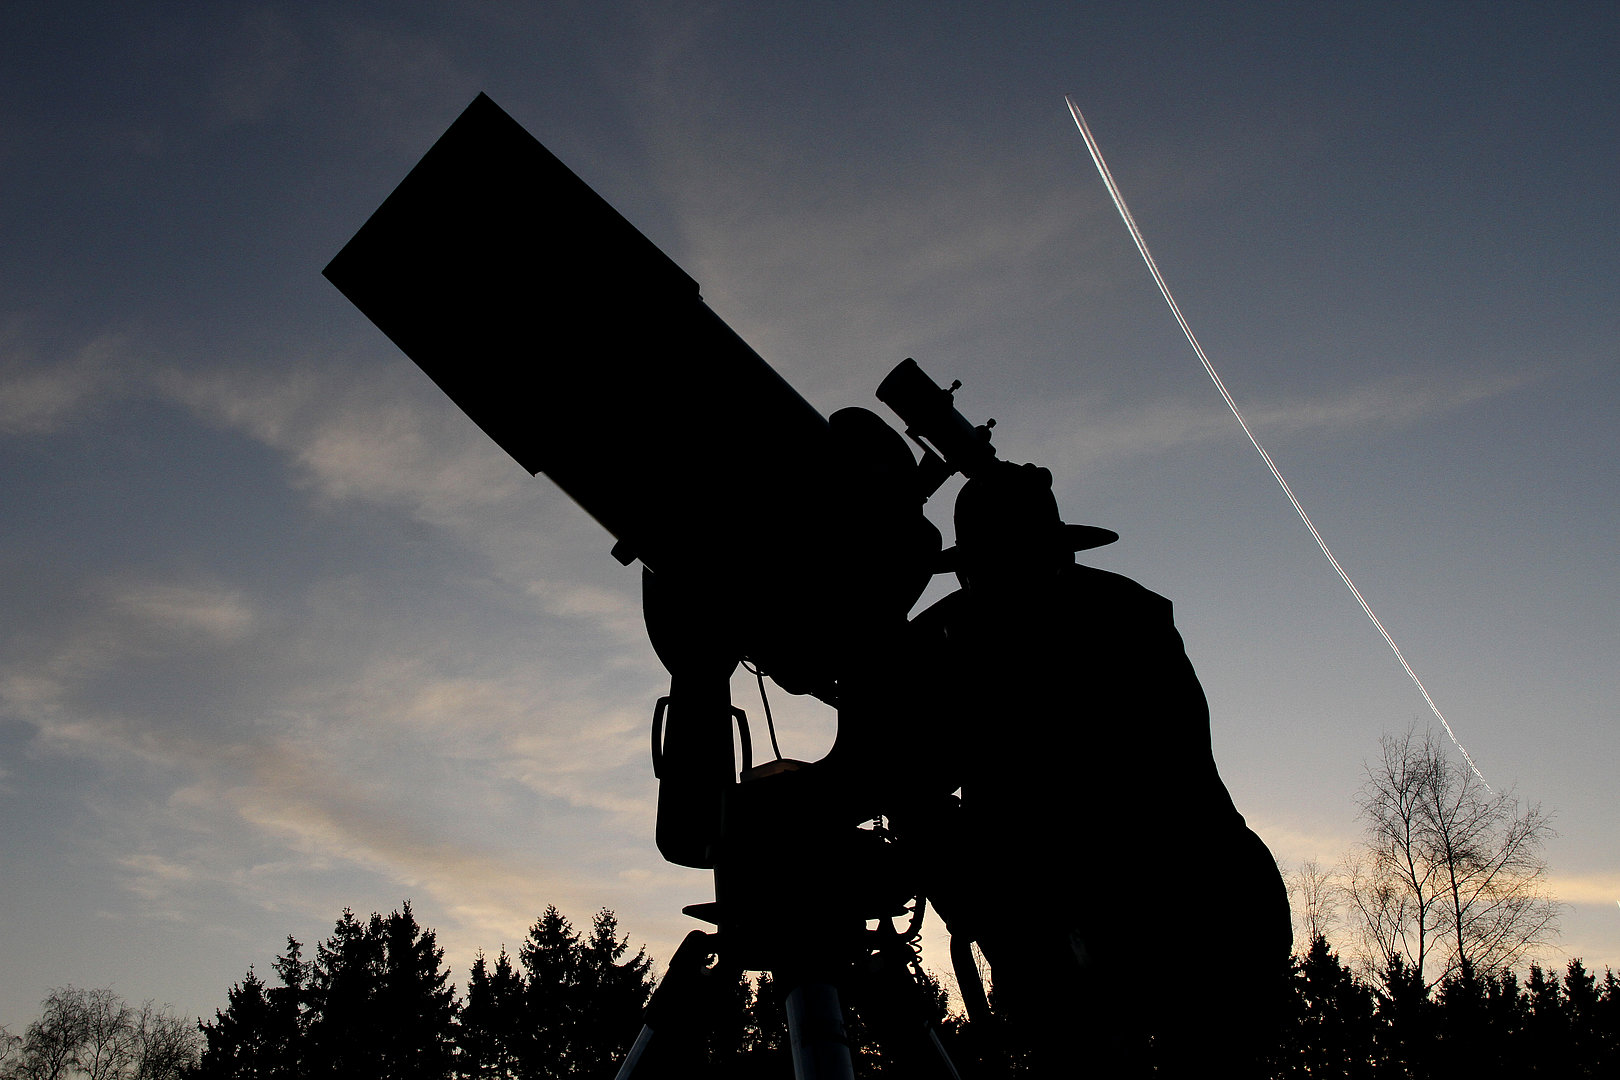 Nachtfoto von einem Mann mit Hut, der durch ein Teleskop schaut